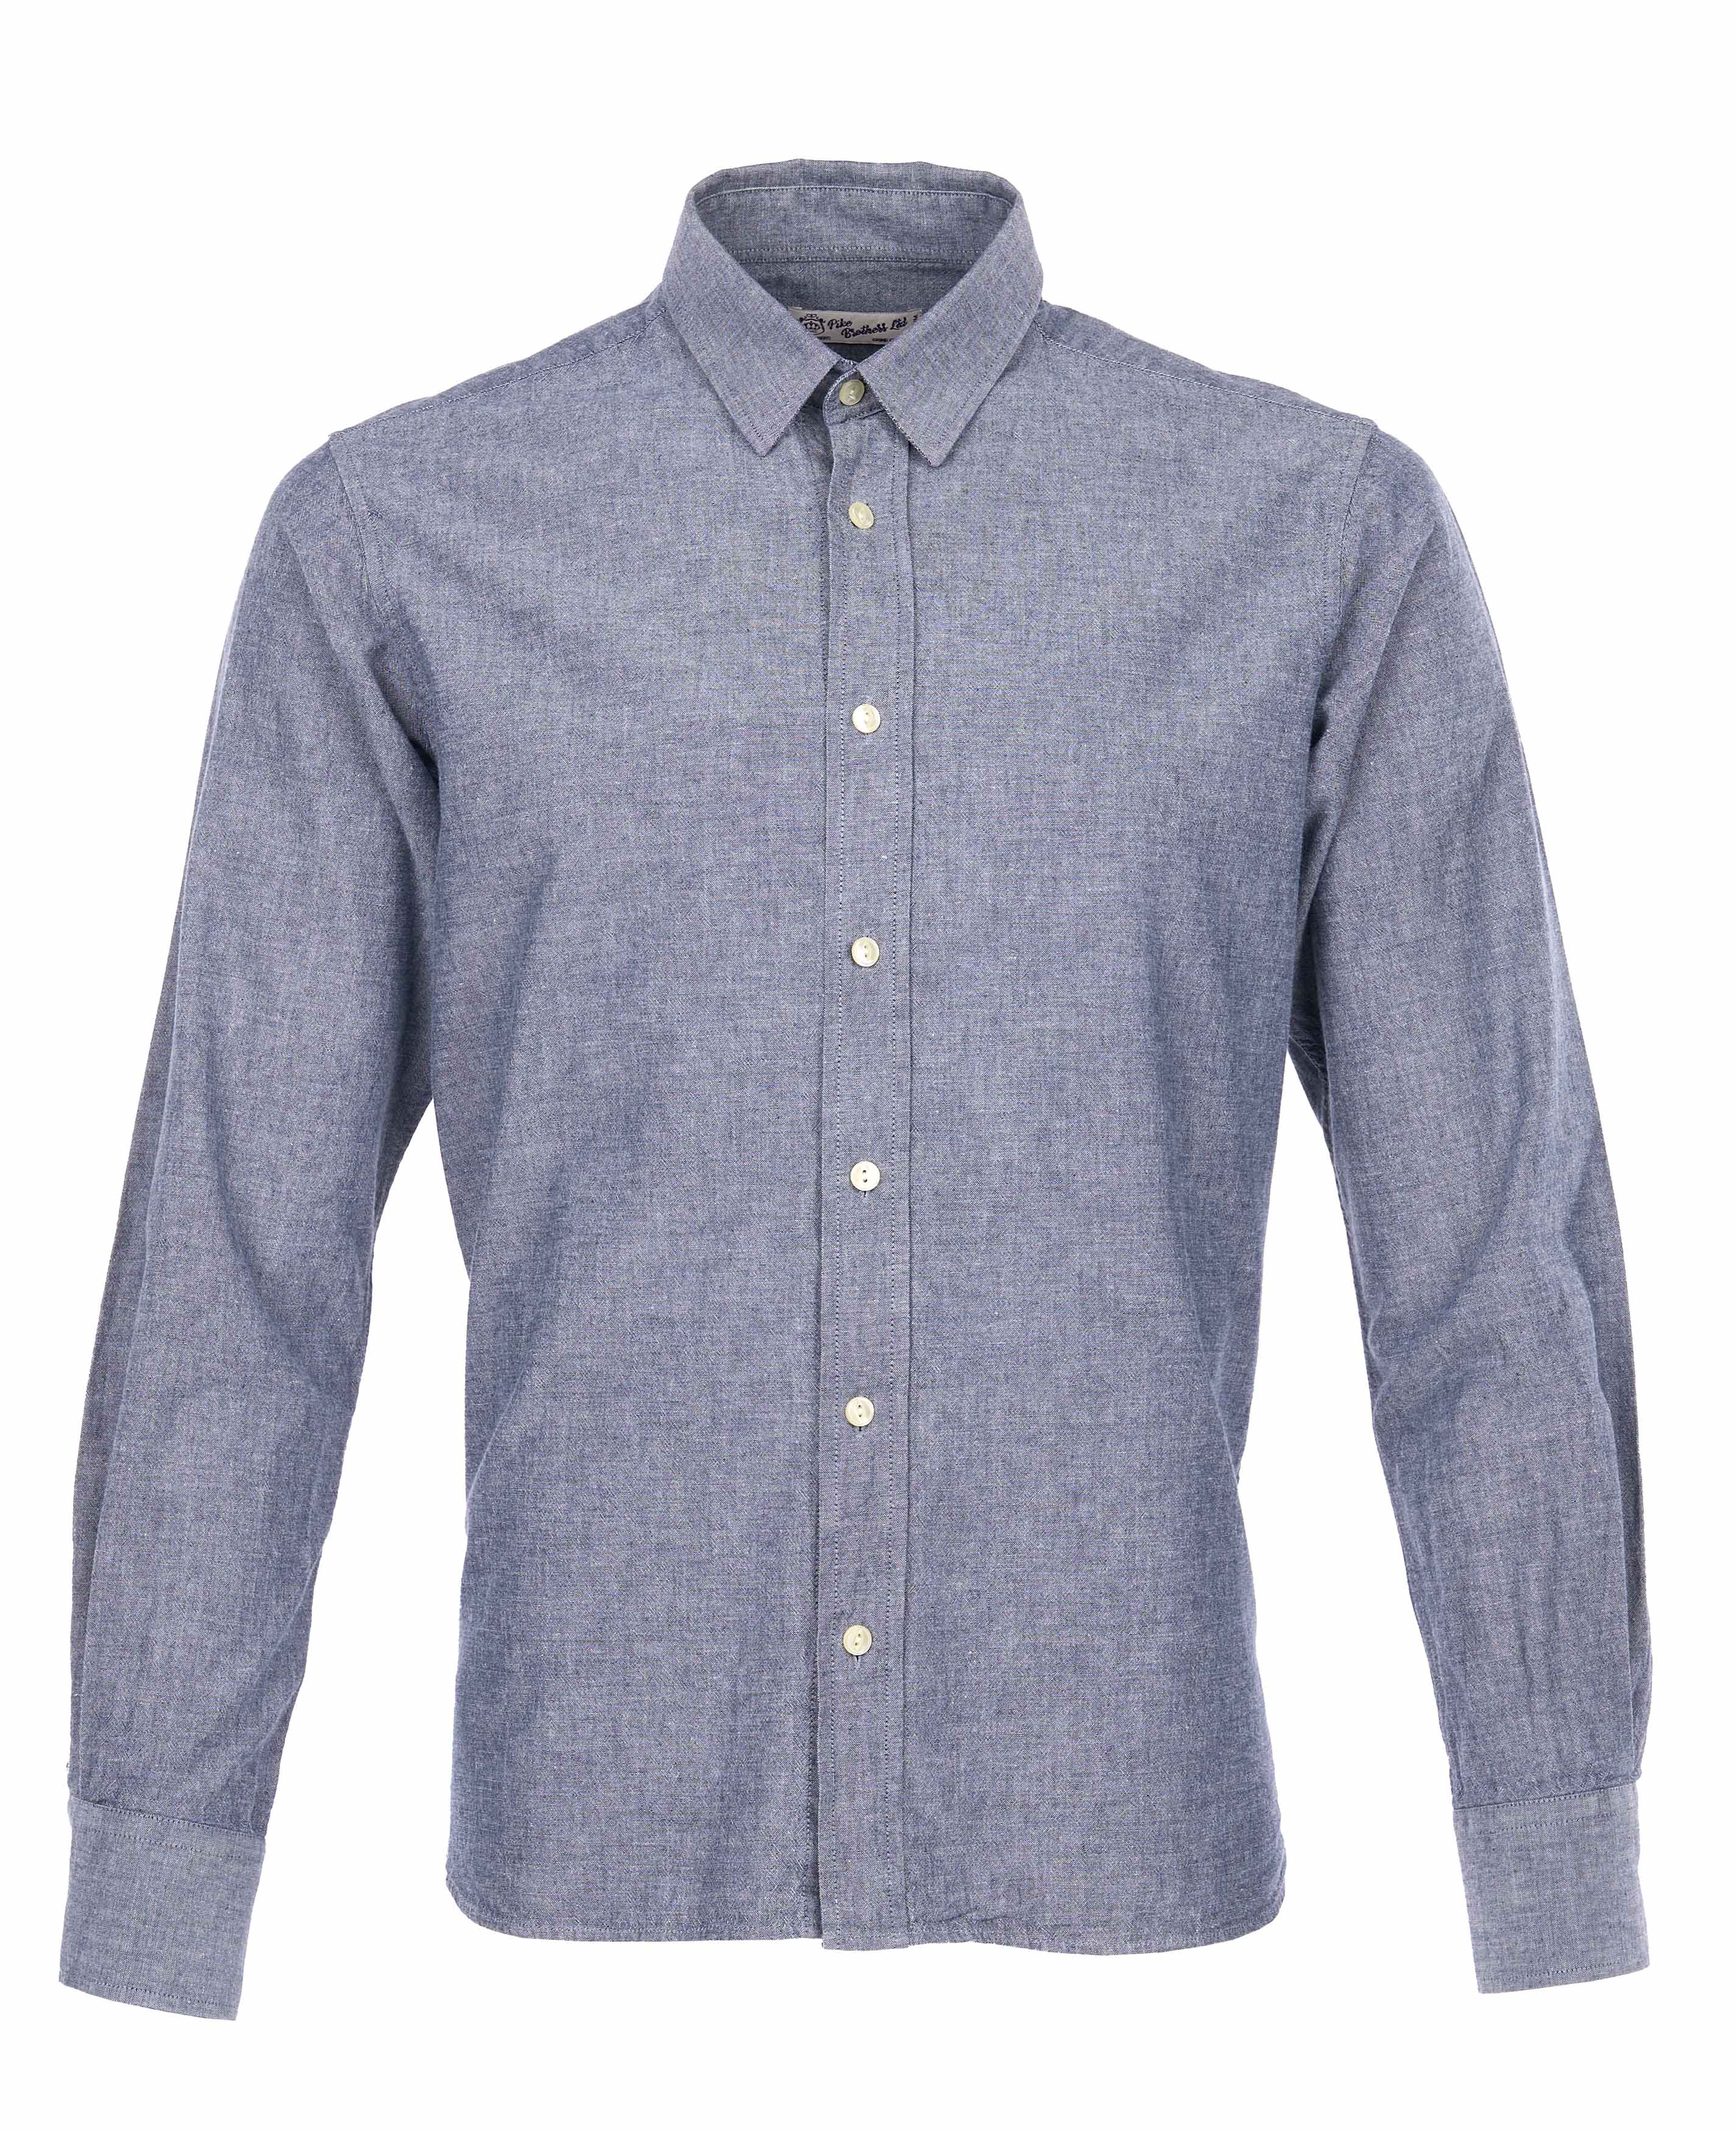 1954 Oxford Shirt Ocean blue